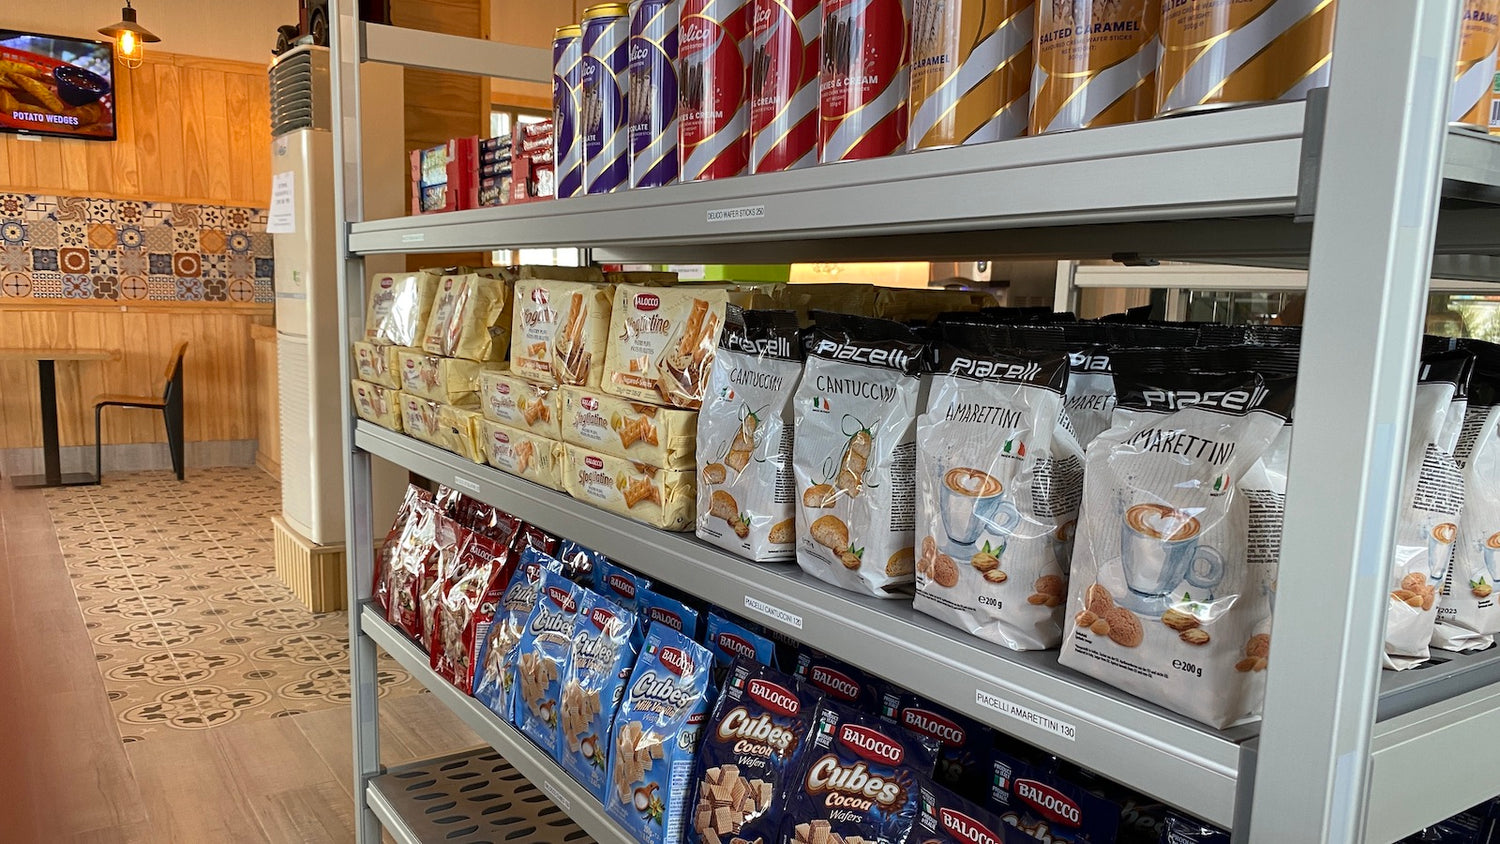 Café Tukan grocery items on a rack